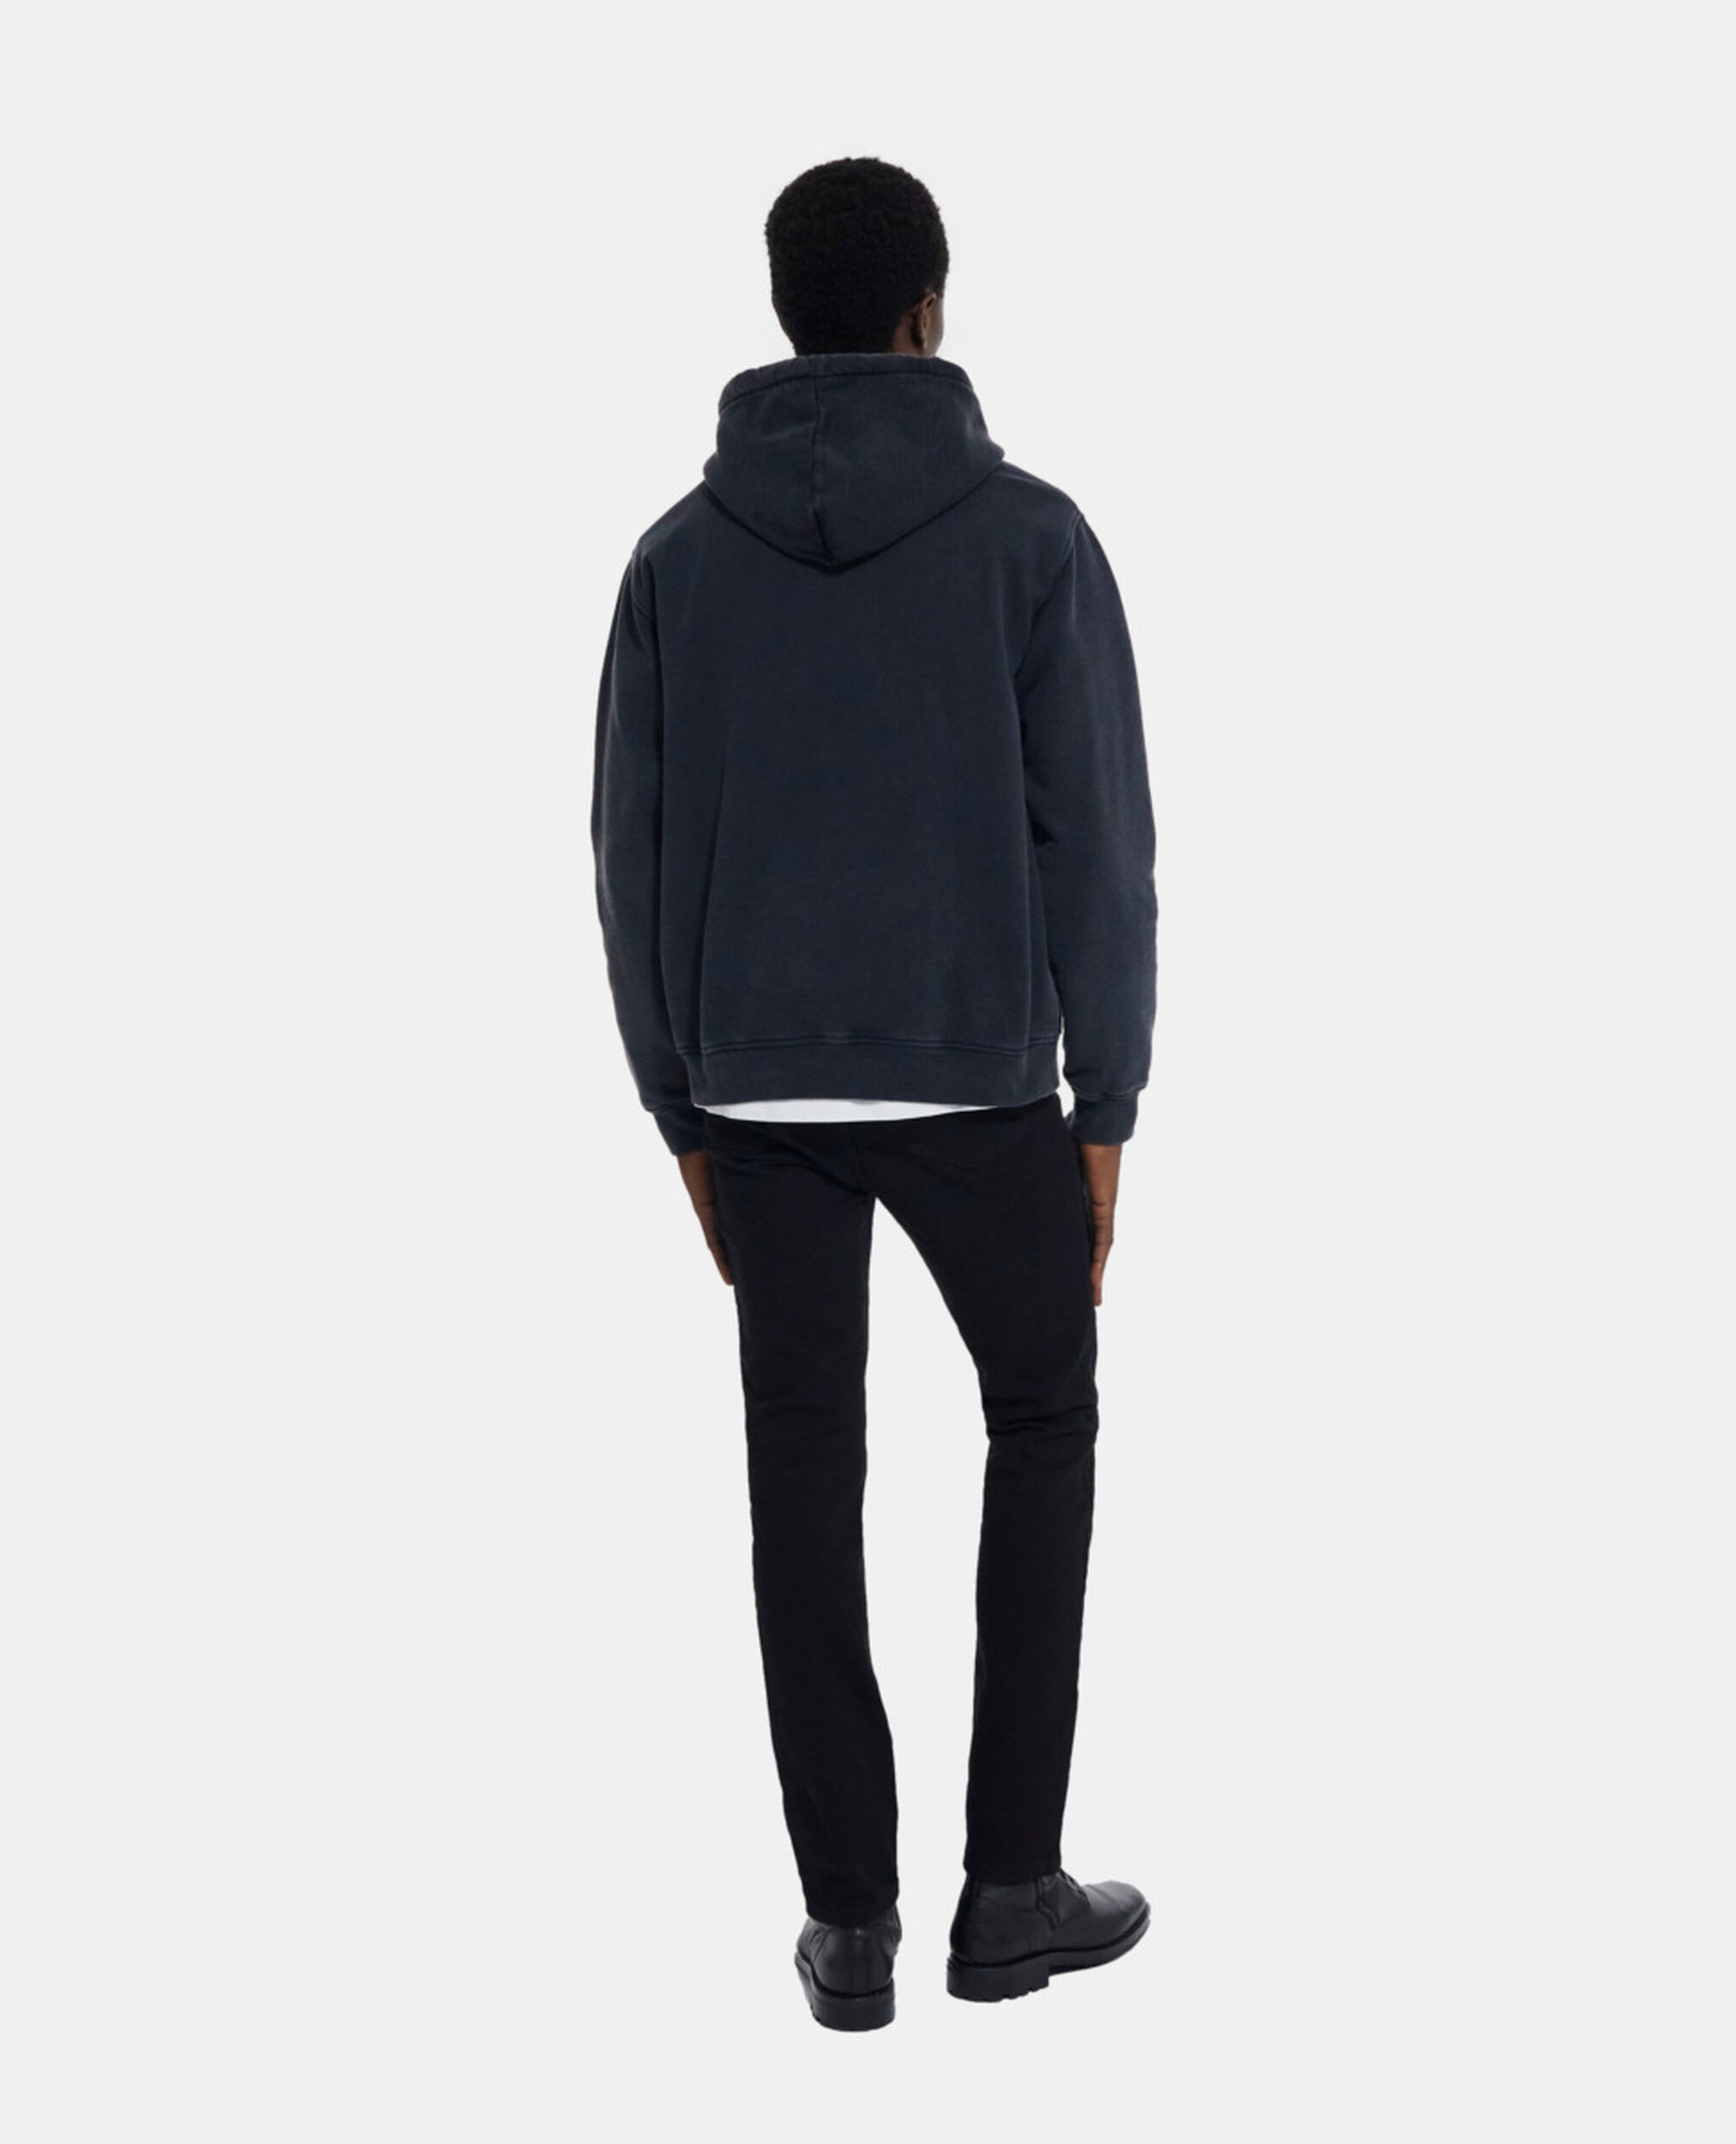 Black sweatshirt, BLACK WASHED, hi-res image number null